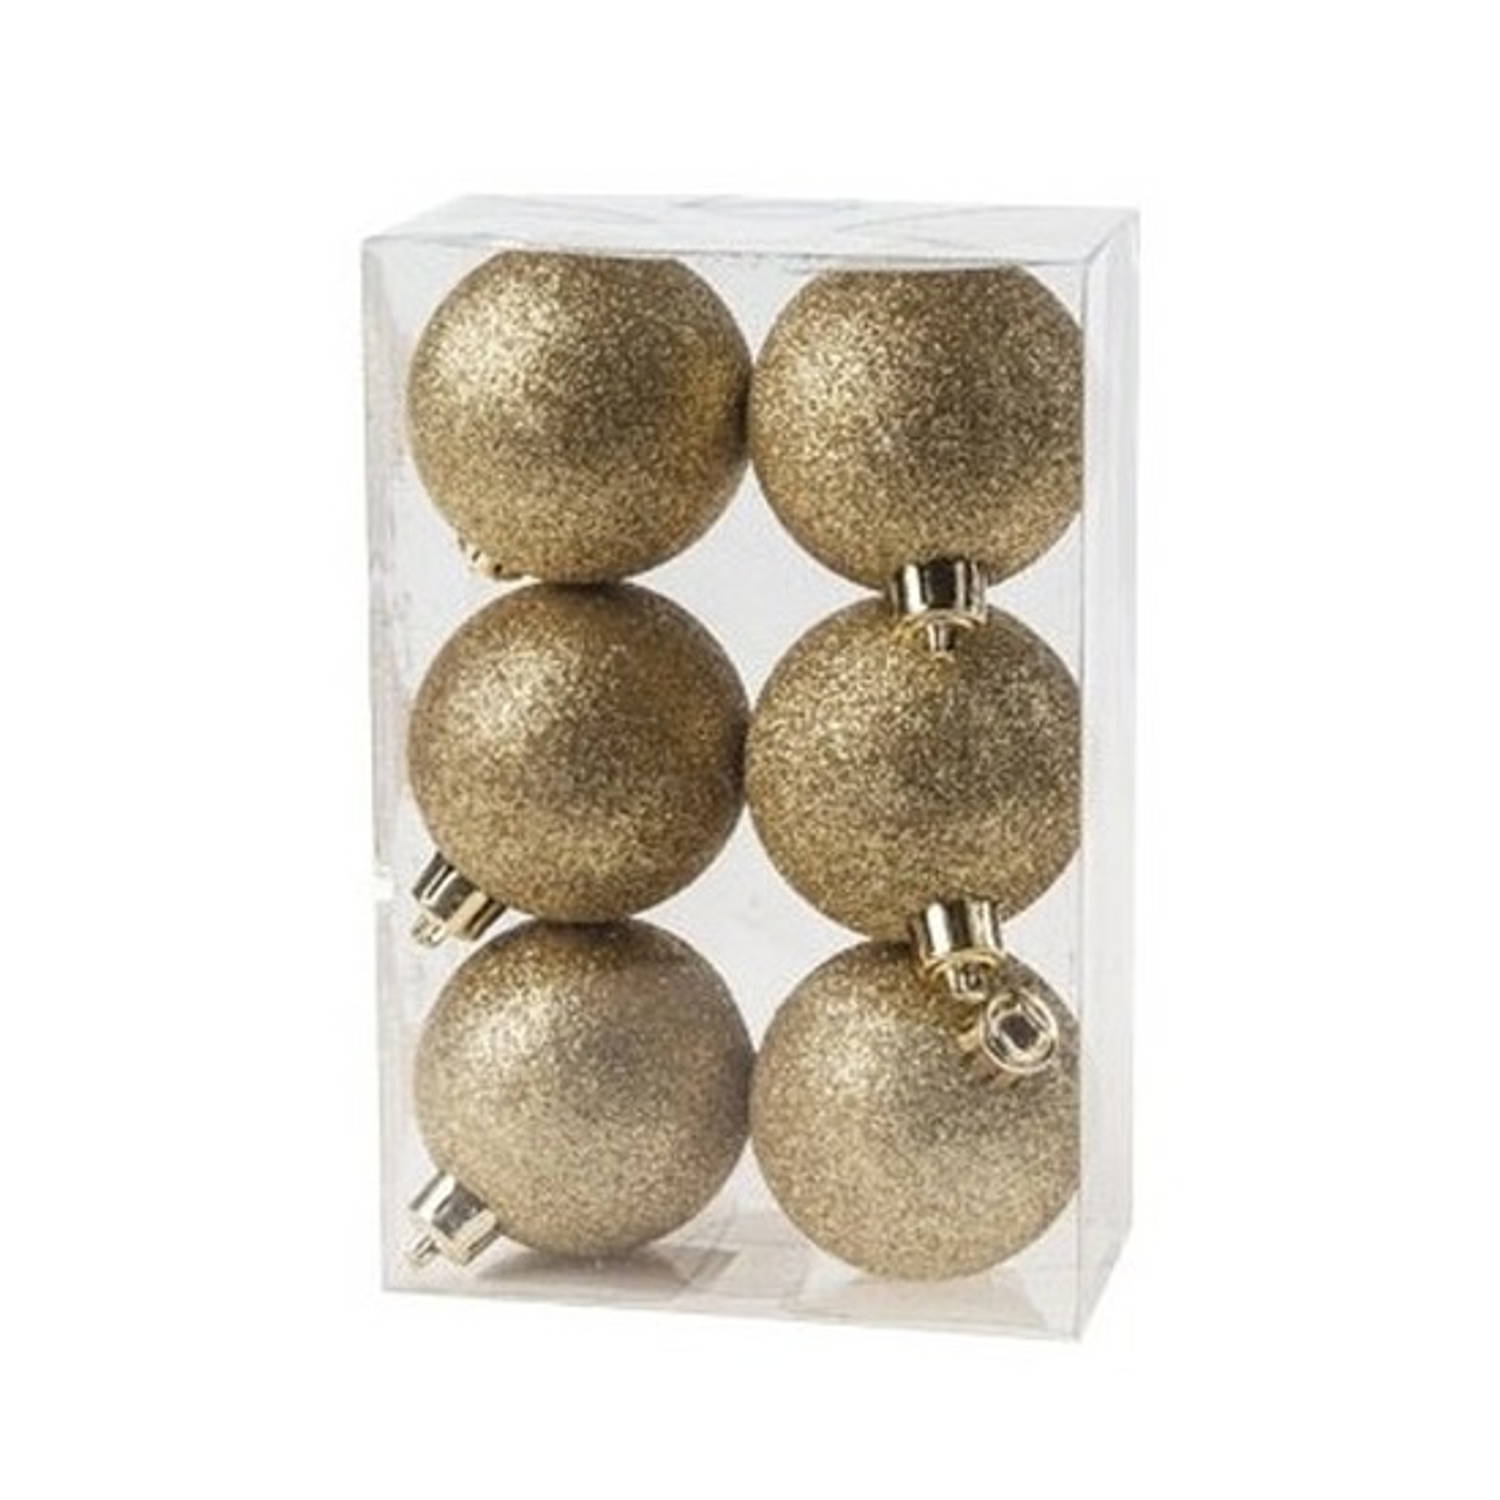 6x Kunststof kerstballen glitter goud 6 cm kerstboom versiering/decoratie - Kerstbal